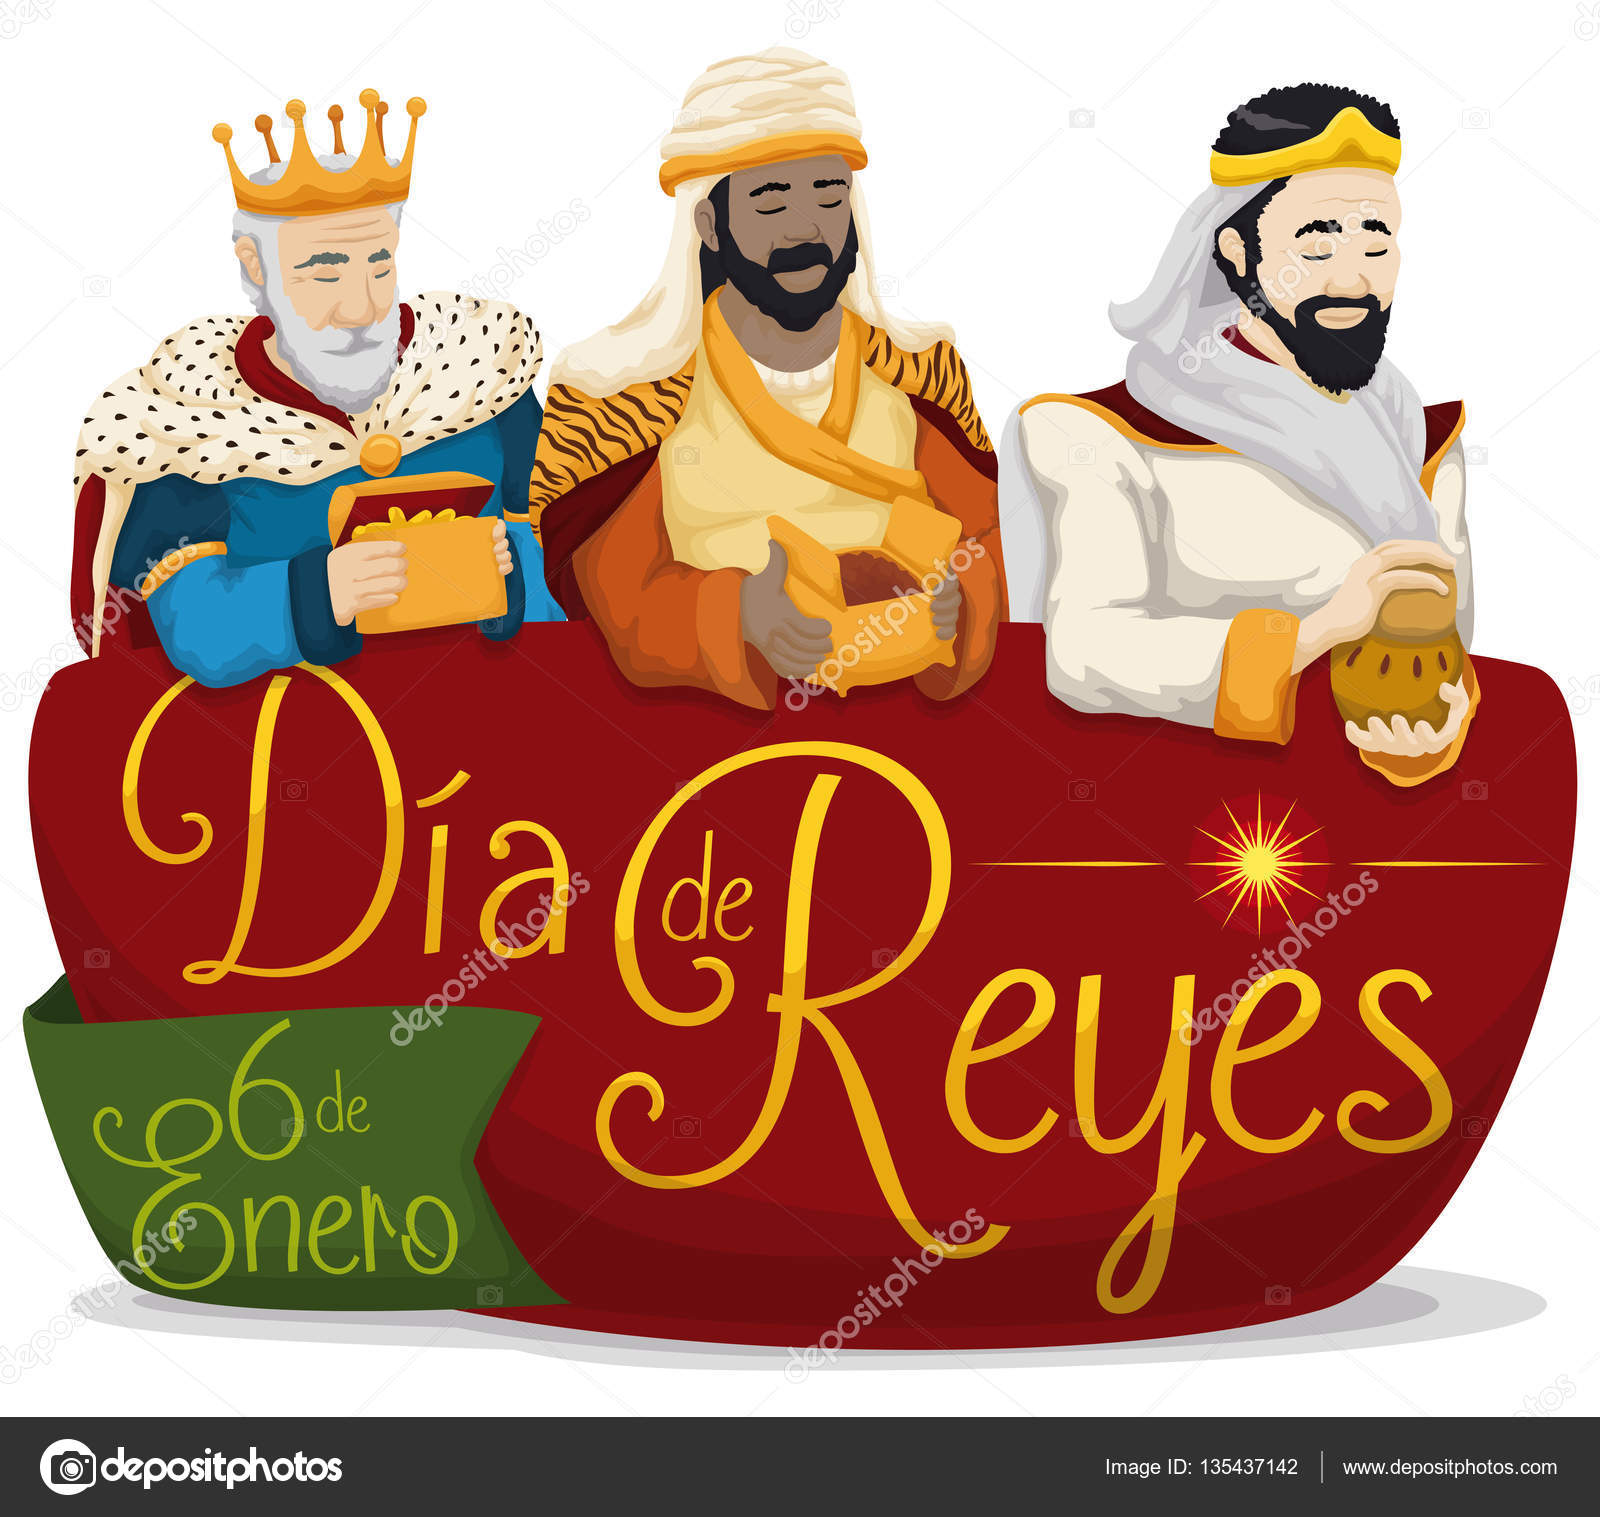 qu-es-dia-de-los-tres-reyes-magos-startupassembly-co